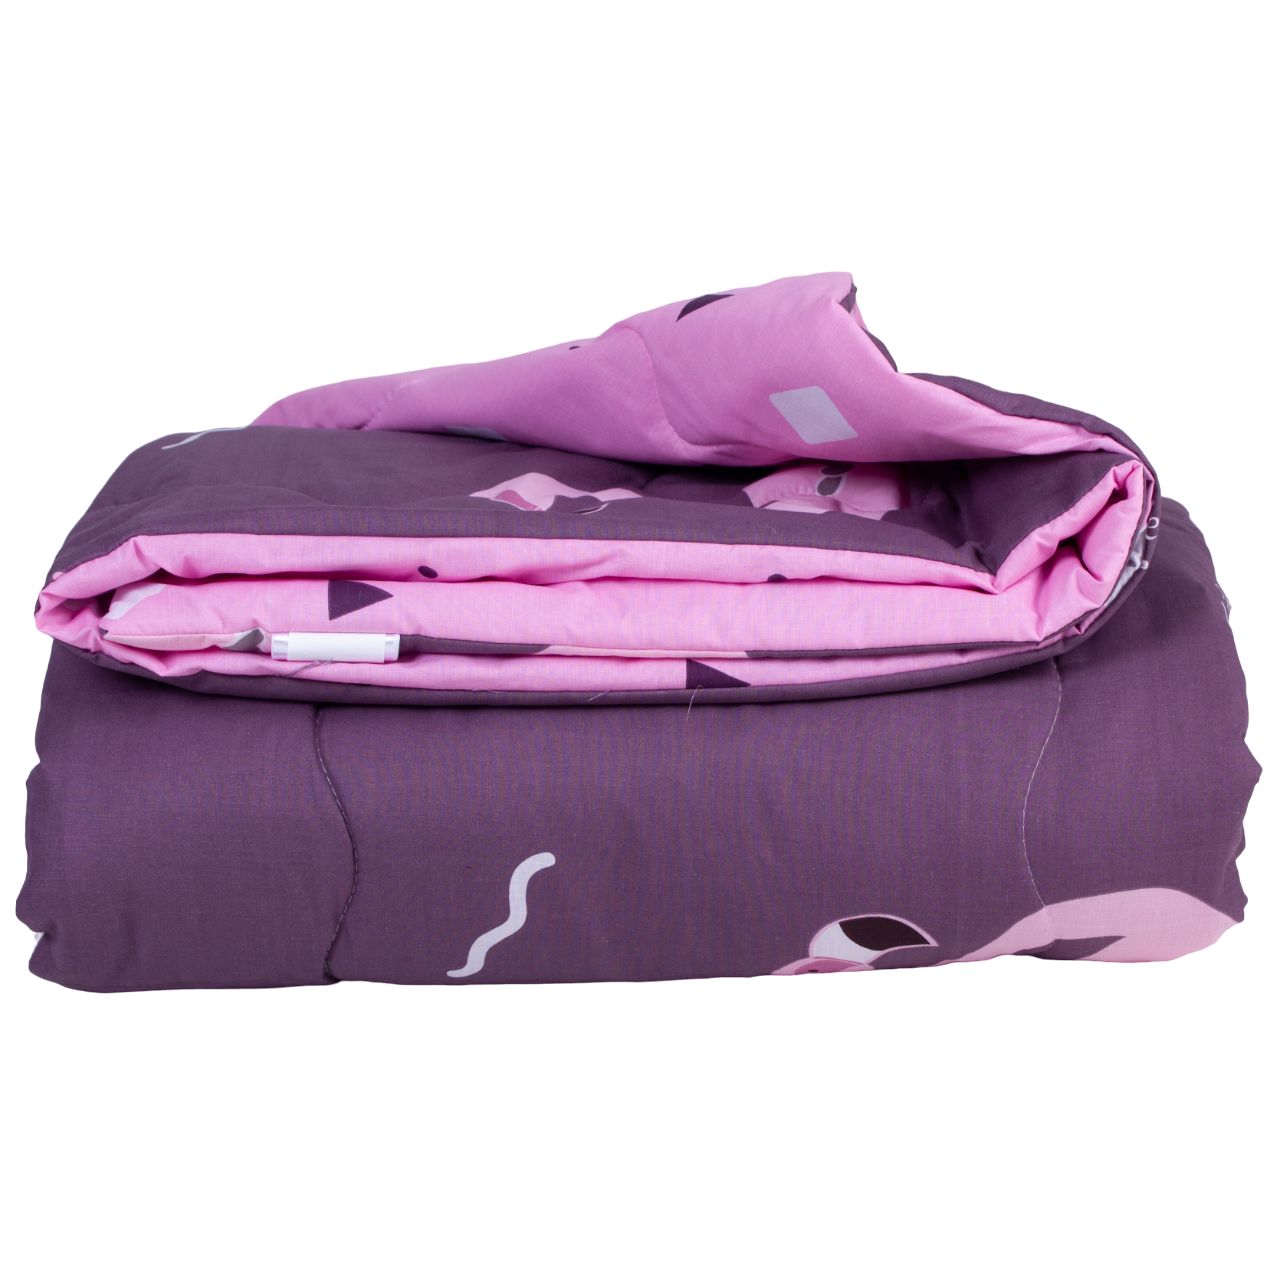 Одеяло антиалергенное MirSon Деми №2830 Сolor Fun Line Nice, двуспальное, 205х172 см, фиолетовое (2200006700814) - фото 2